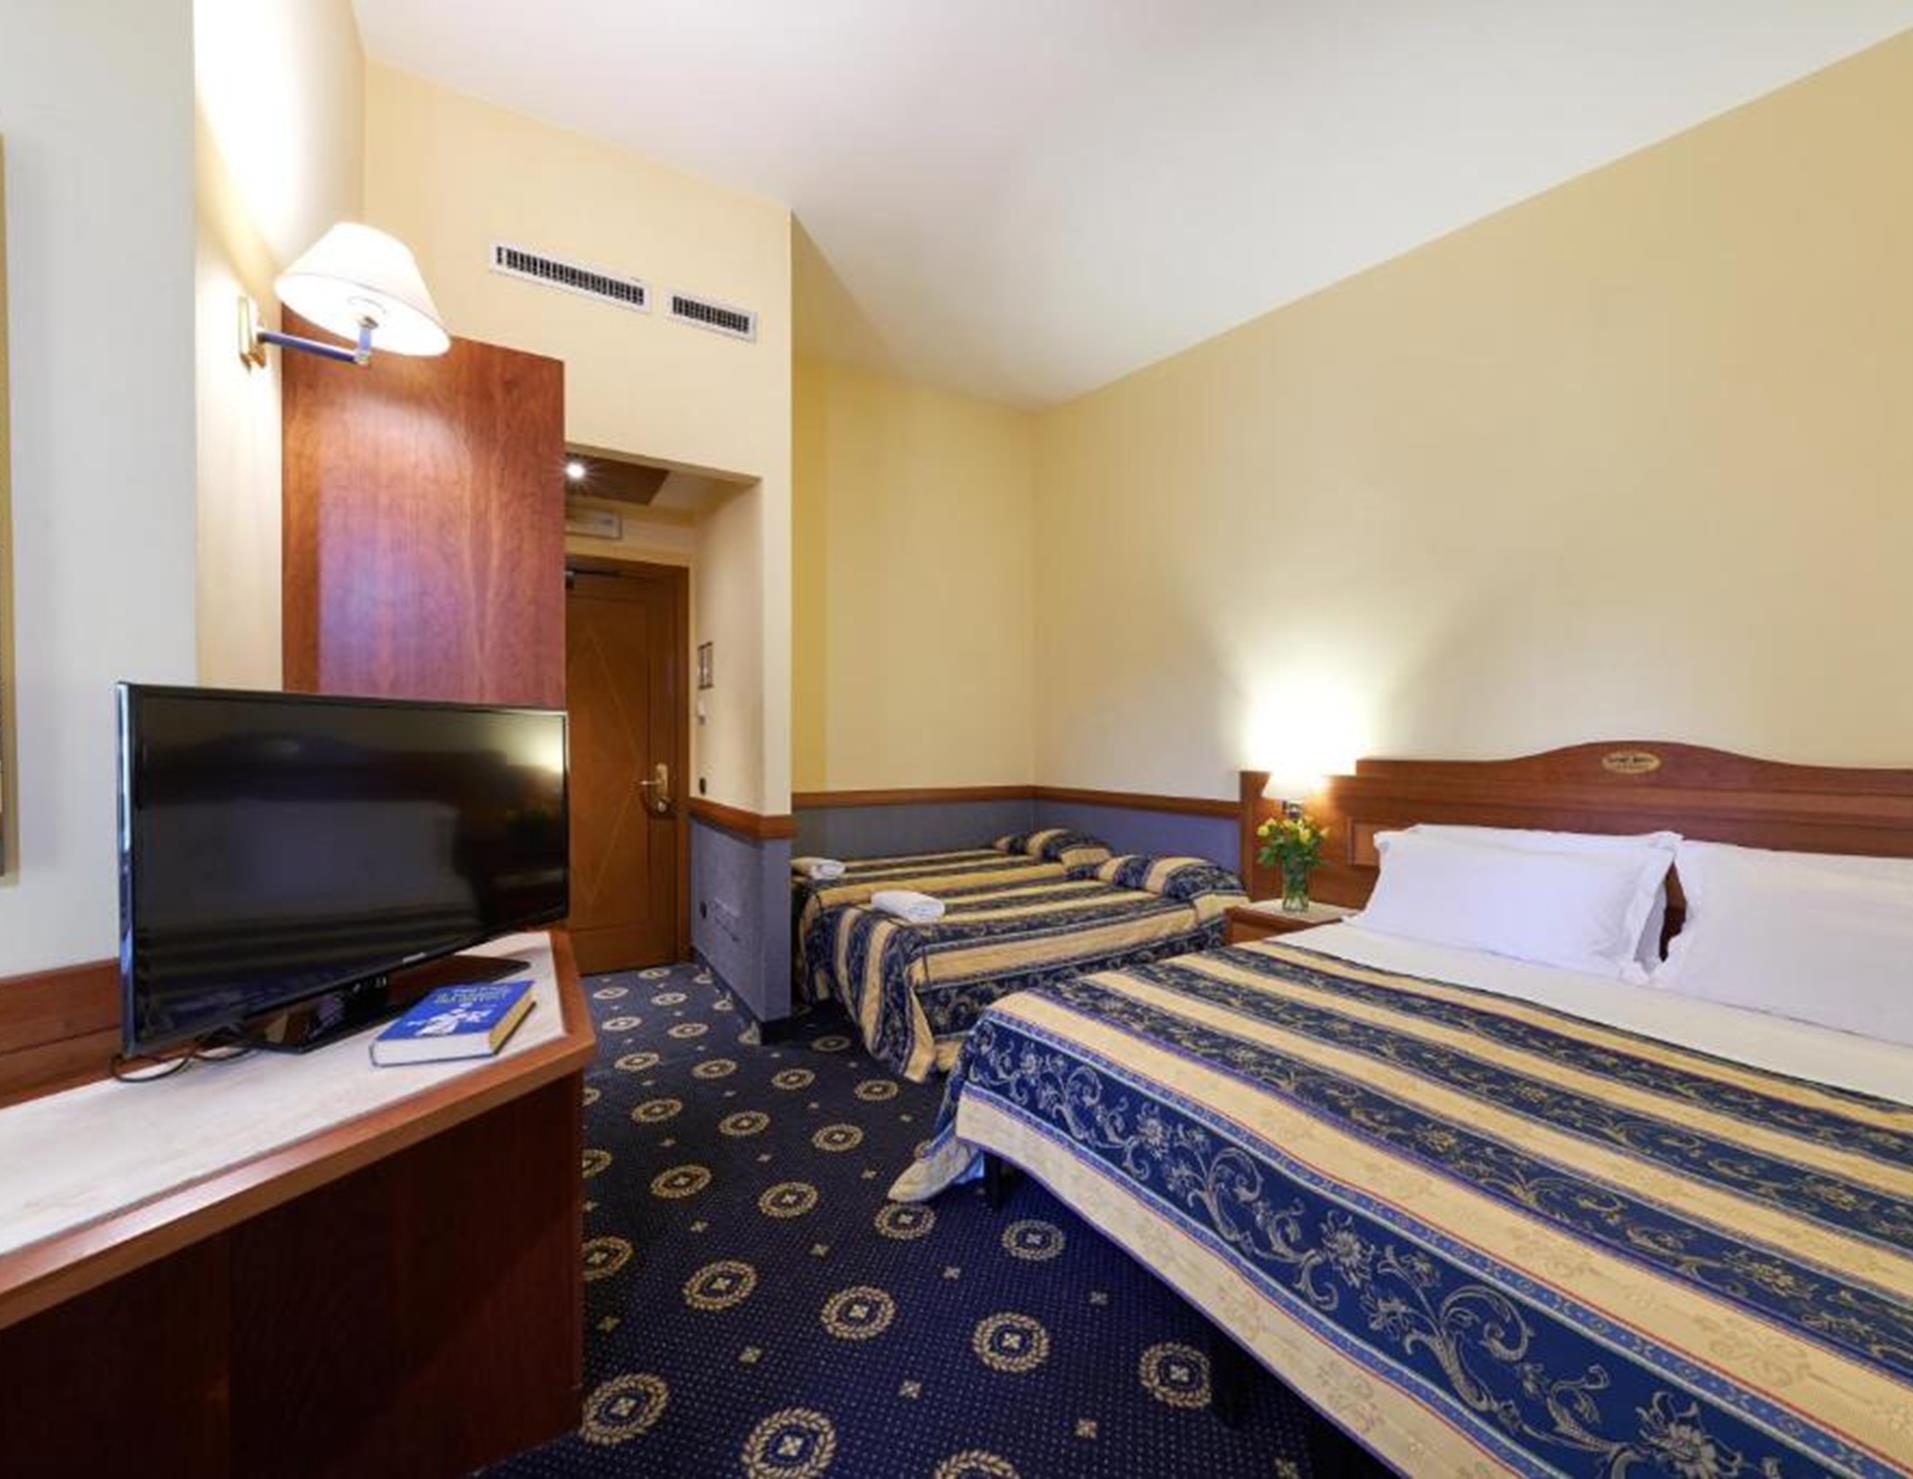 Hotel Ristorante La Piana - Room 6